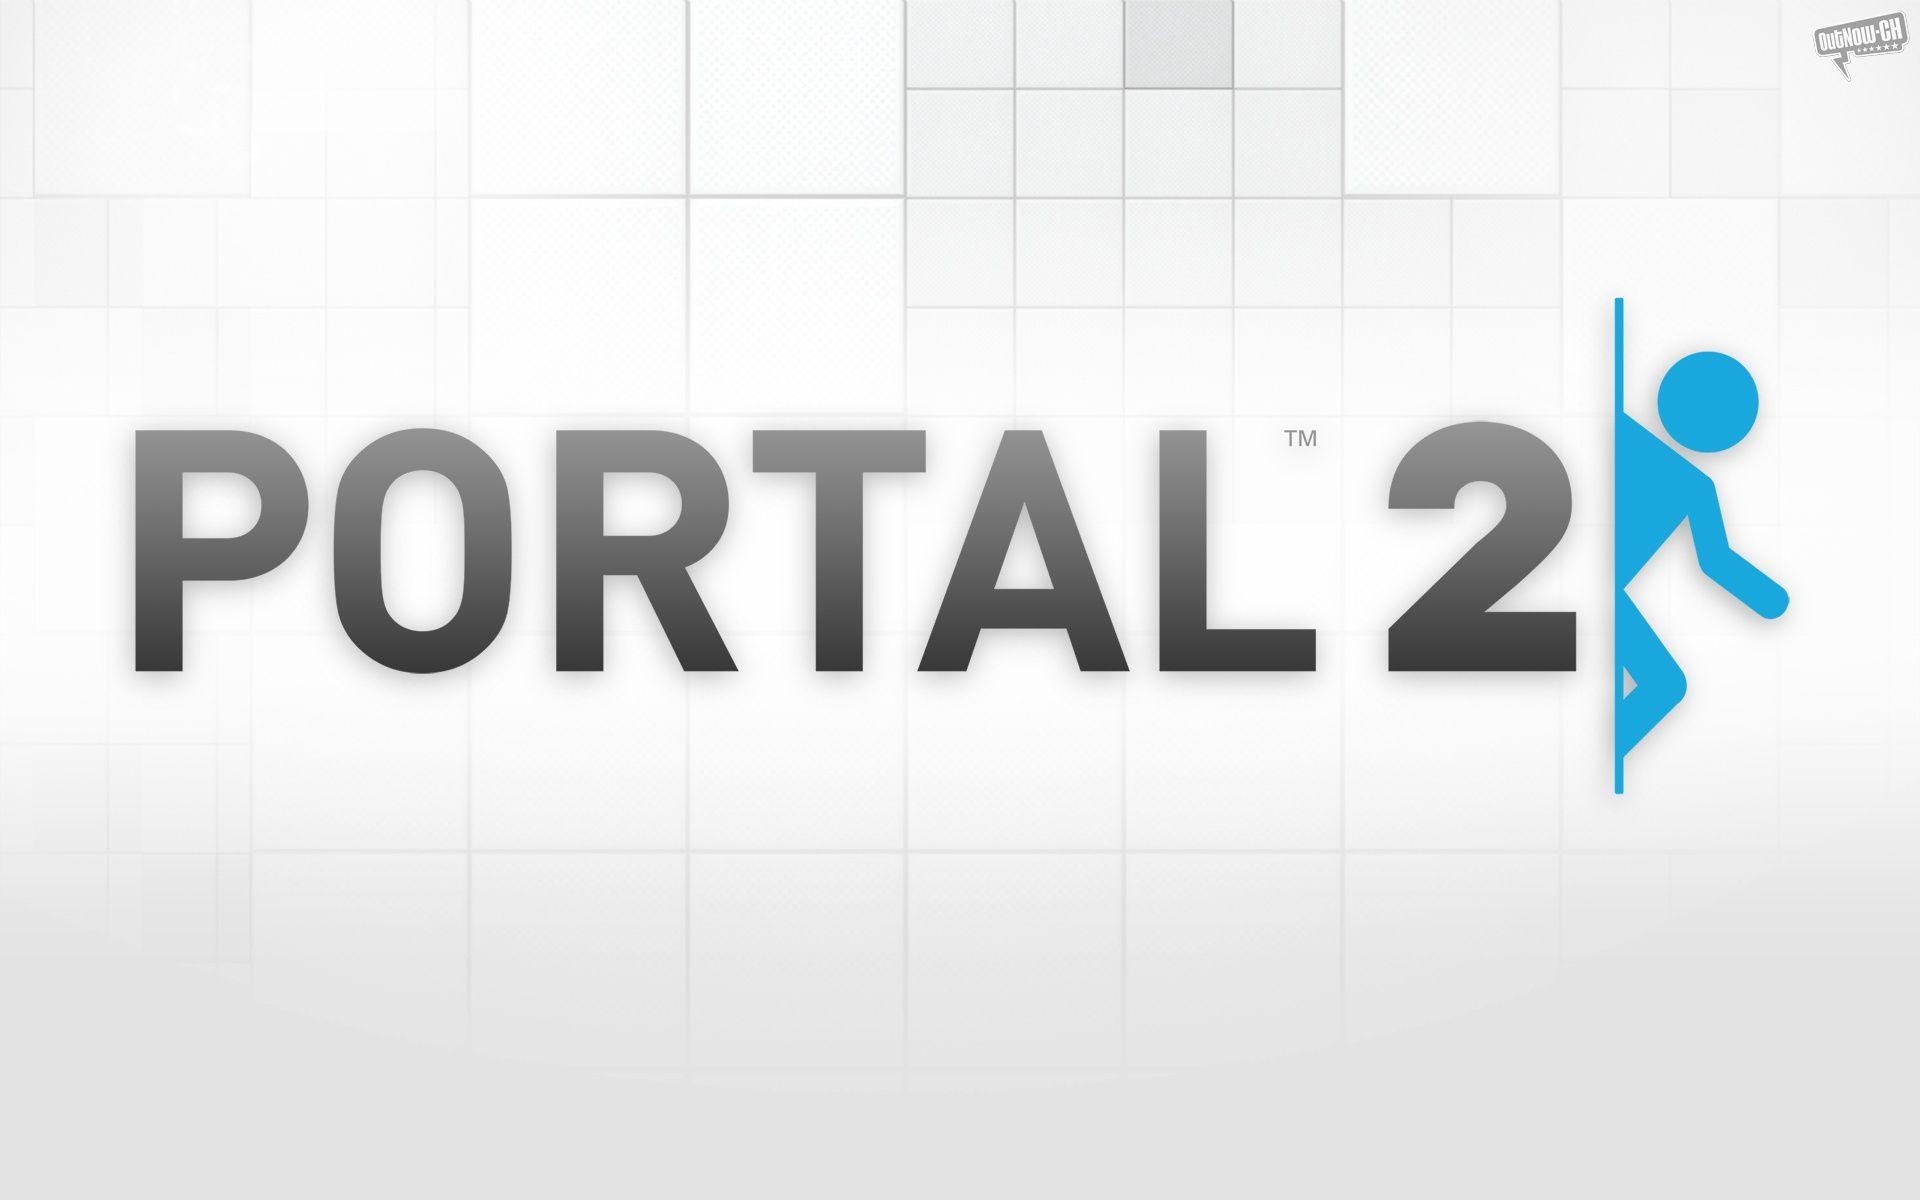 Portal 2 (Imágenes y Wallpaper HD)!